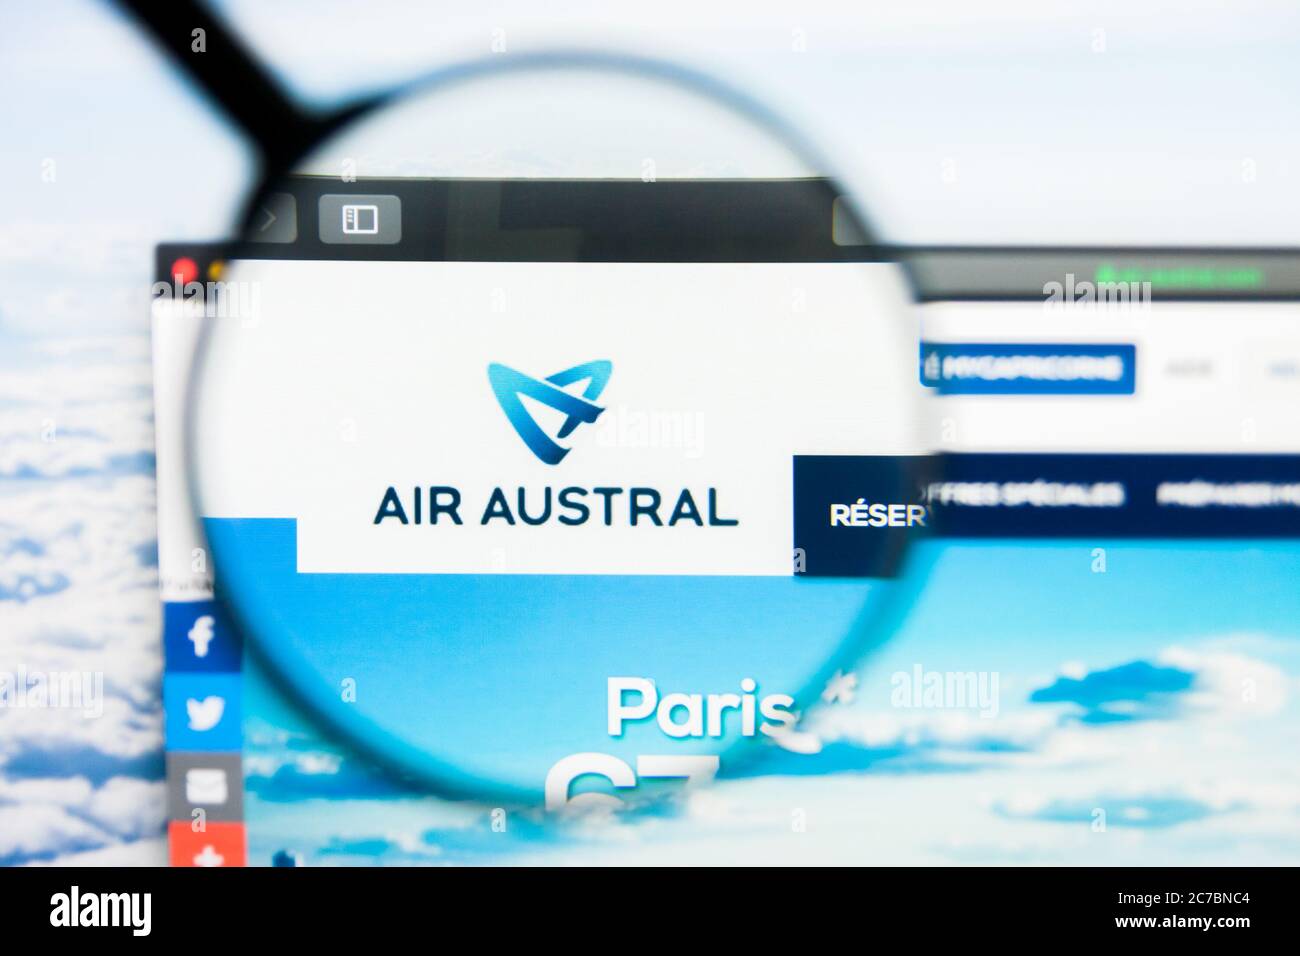 Los Angeles, Kalifornien, USA - 21. März 2019: Illustrative Editorial der Homepage von Air Austral. Air Austral Logo auf dem Display sichtbar. Stockfoto